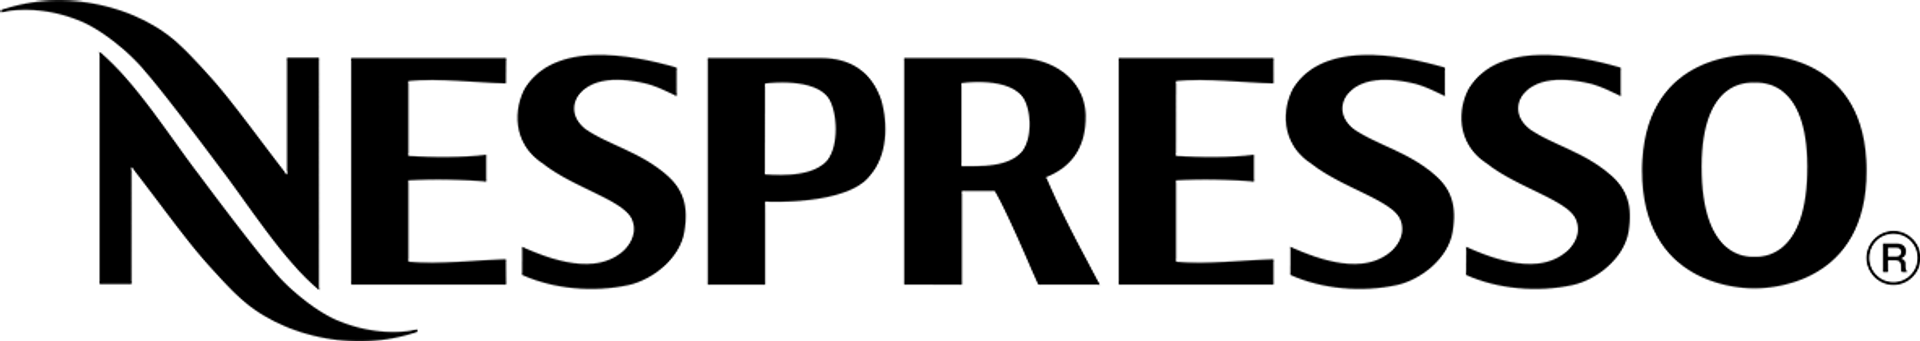 NESPRESSO logo die aktuell Flugblatt